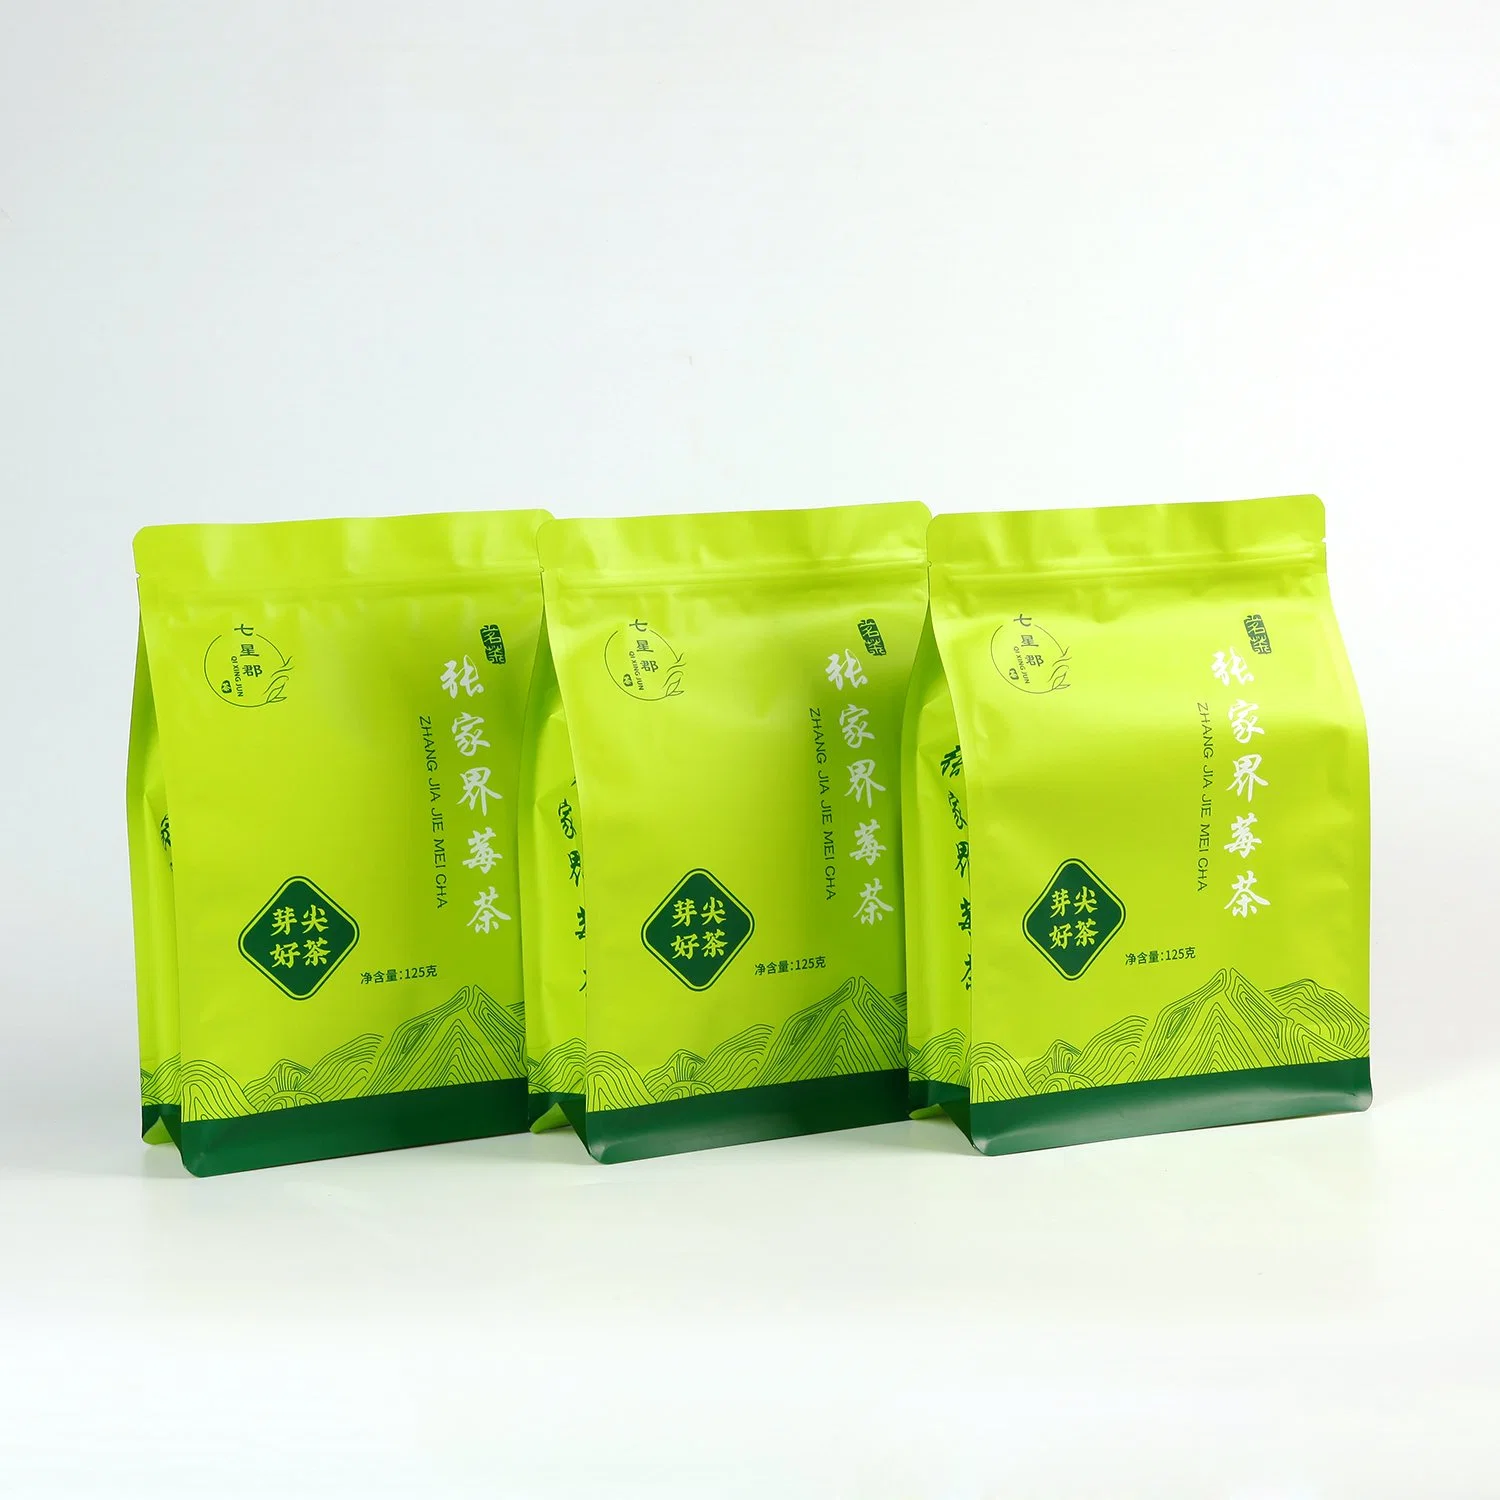 Green Food Packaging Bag Leisure Activities Outdoor Snack Packaging Bag